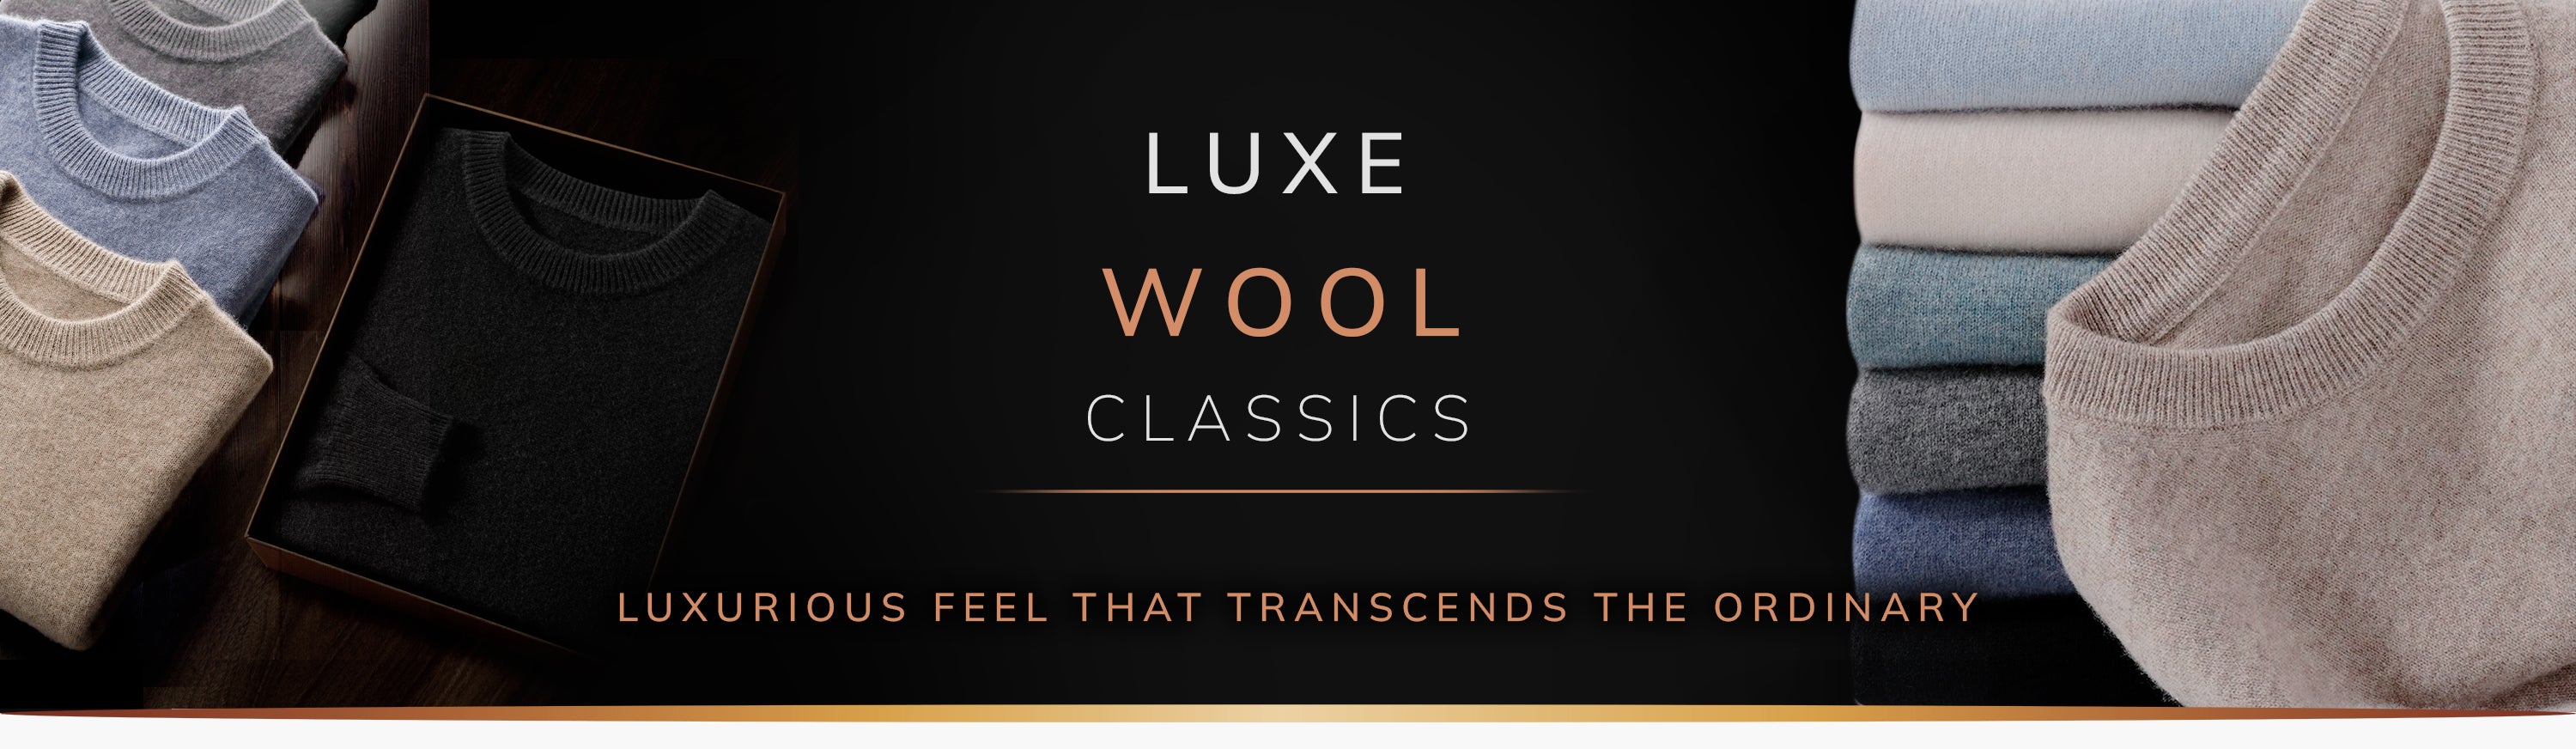 Luxe Wool Classics.jpg__PID:f9b3ab2d-87ab-4257-af5c-afbfc5efc2a9